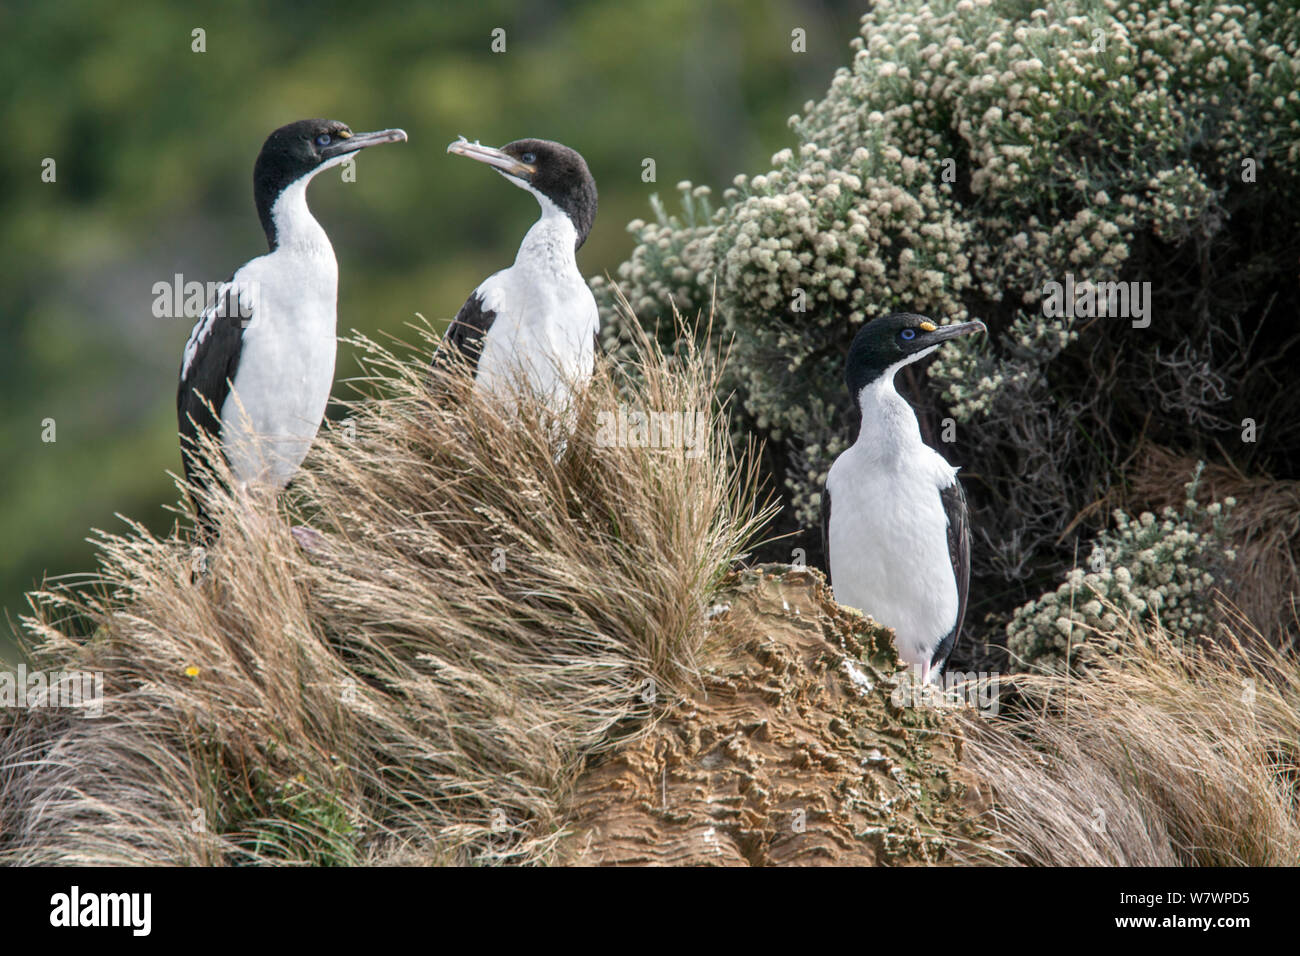 Due adulti della Nuova Zelanda re shags (Leucocarbo carunculatus) (sinistra e destra) con un recentemente sviluppato in immaturi tra. Queen Charlotte Sound, Marlborough Sounds, Nuova Zelanda, febbraio. Le specie vulnerabili. Foto Stock